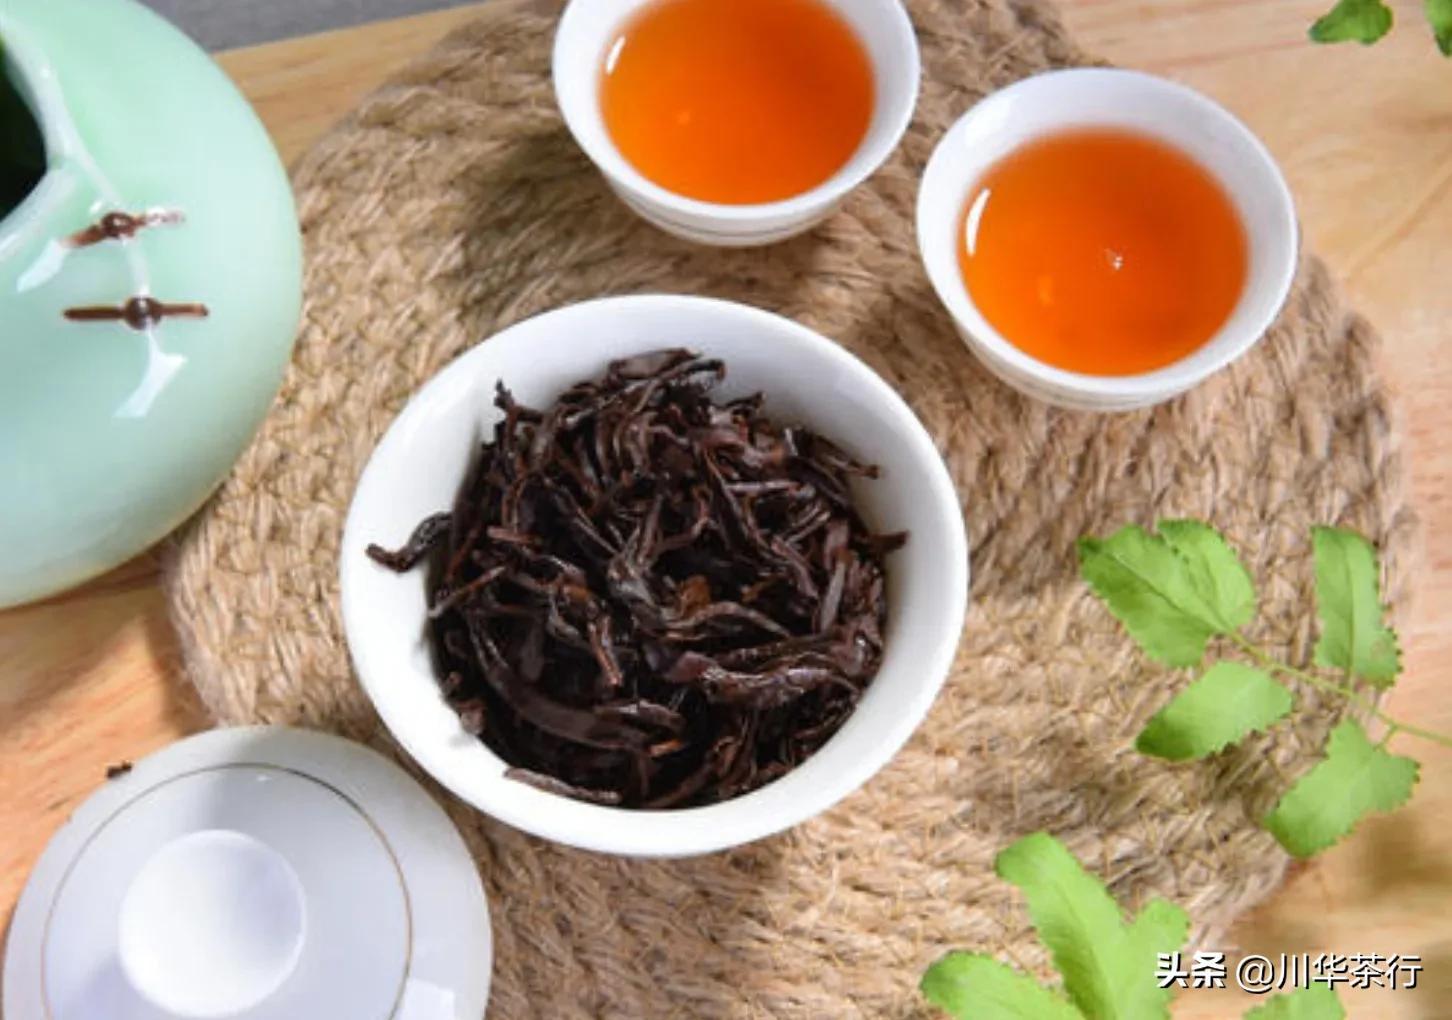 鳳凰單叢雖然是烏龍茶，但是它也有紅茶你知道么?